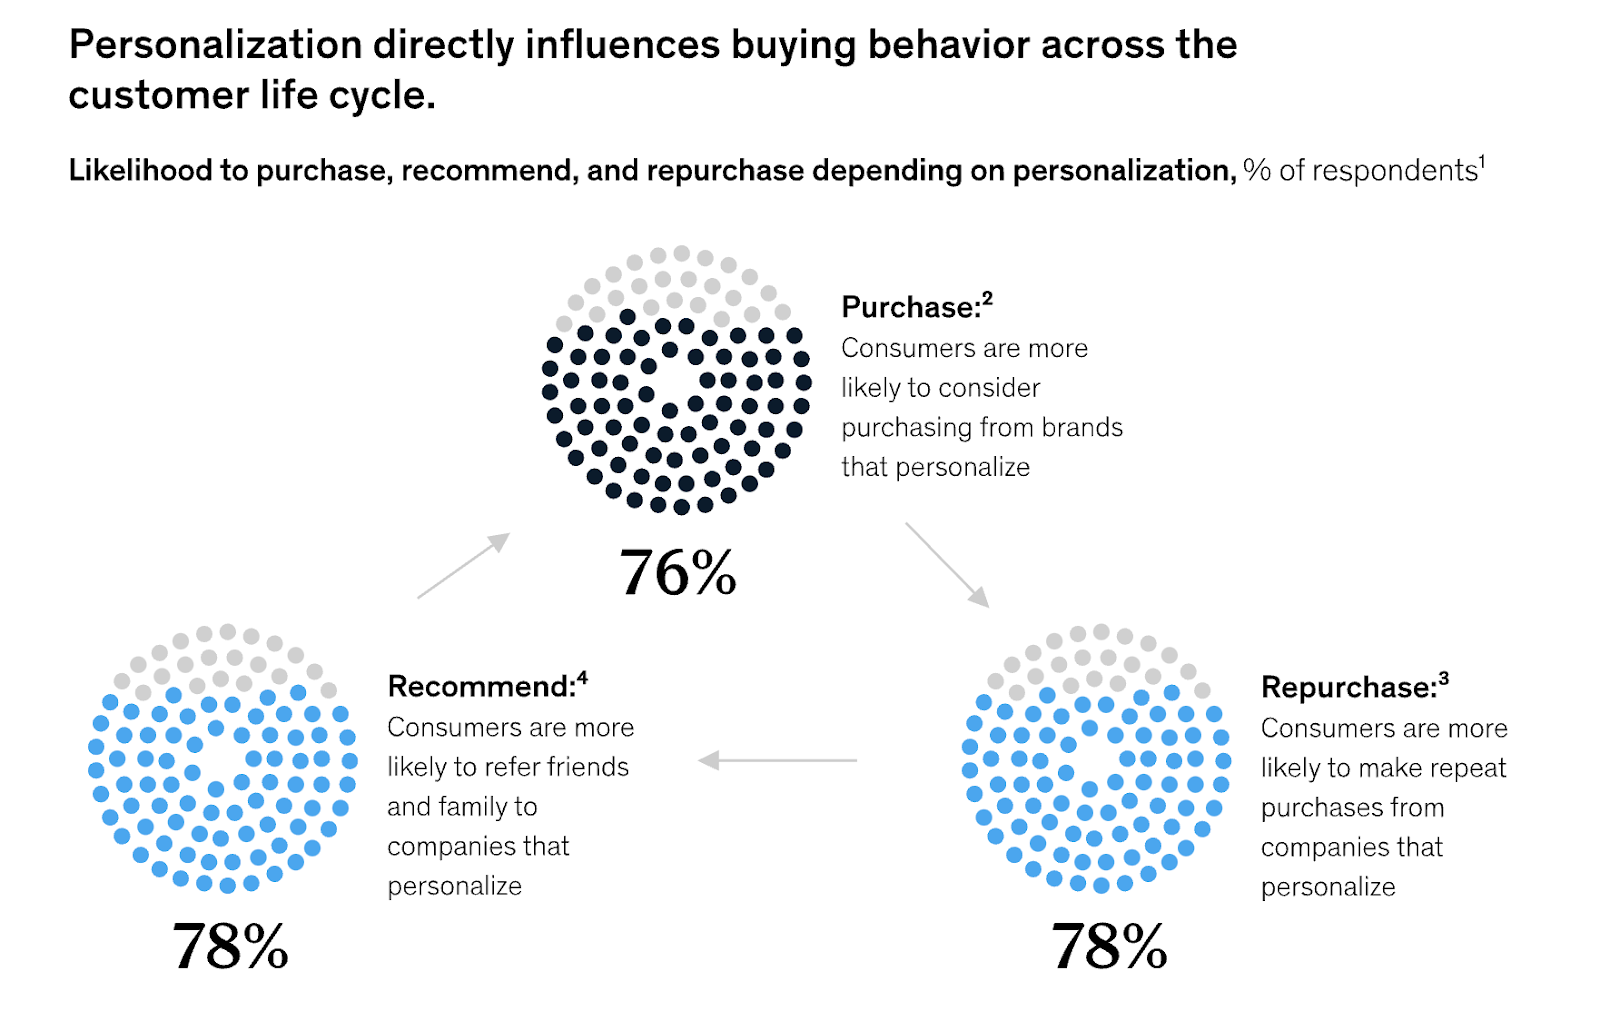 Dane McKinsey dotyczące wpływu personalizacji na zachowania zakupowe.